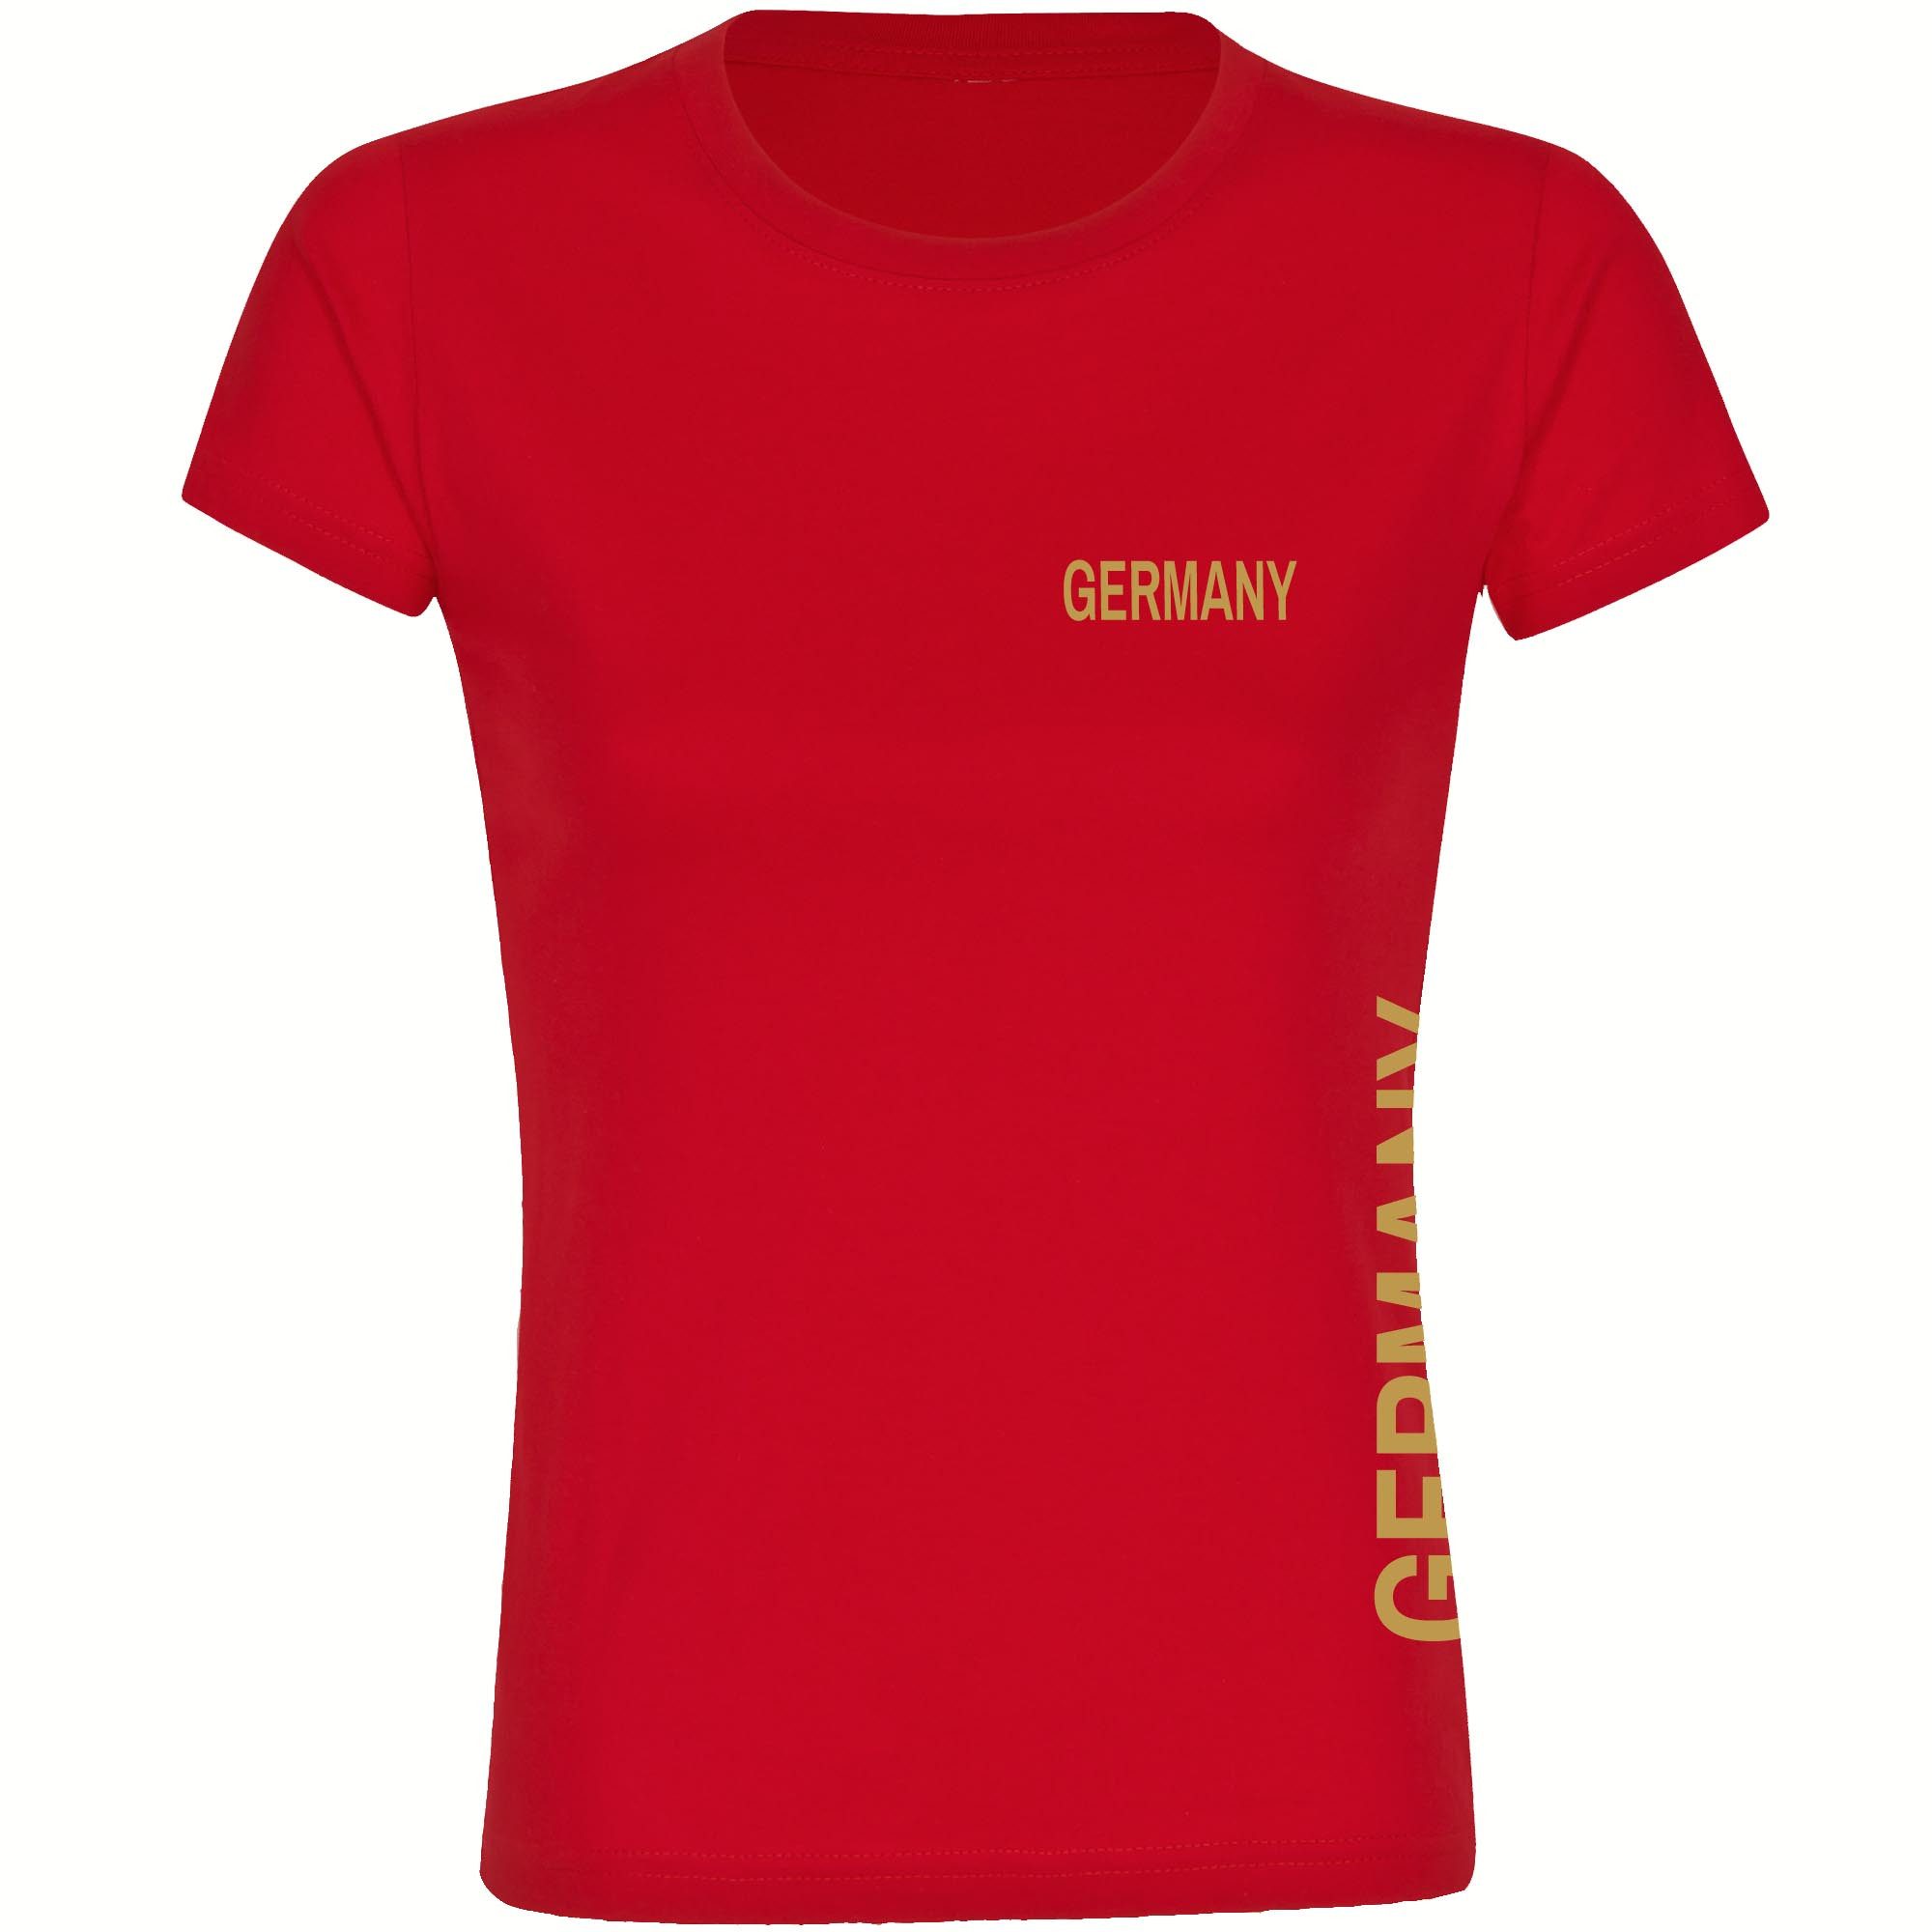 multifanshop T-Shirt Damen Germany - Brust & Seite Gold - Frauen